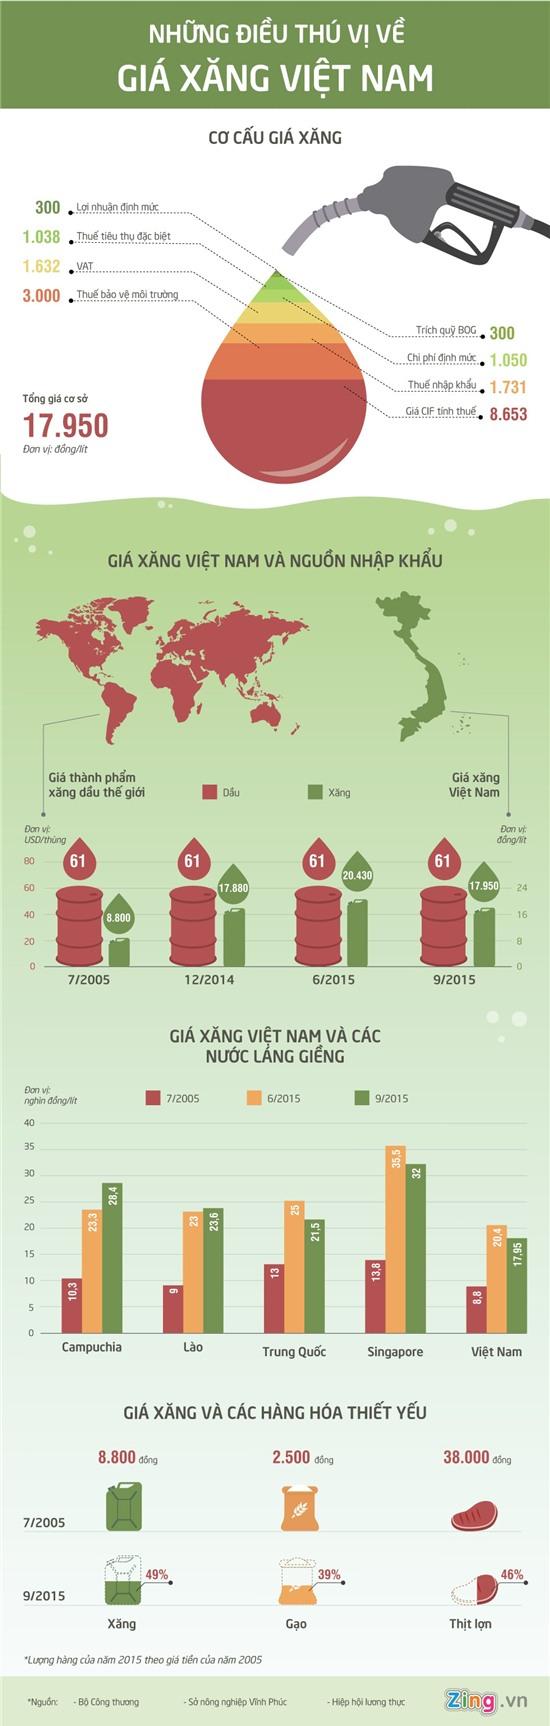 Những điều thú vị về giá xăng Việt Nam